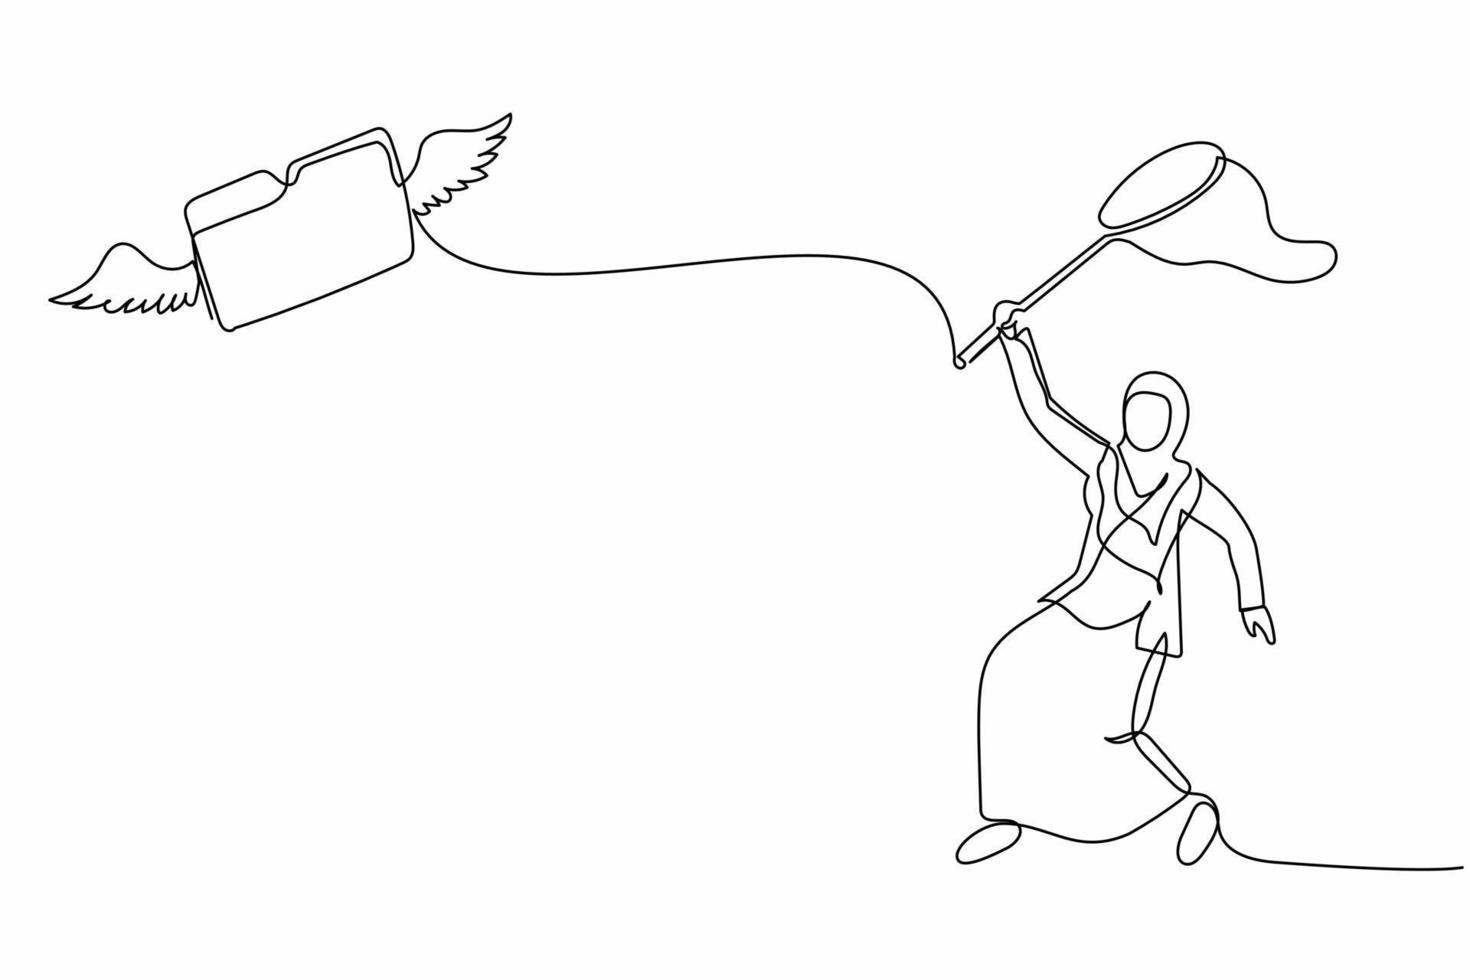 kontinuierliche einstrichzeichnung arabische geschäftsfrau versucht, fliegende ordner mit schmetterlingsnetz zu fangen. fehlende Archivdatei eines geheimen oder wichtigen Dokuments. Vektorgrafik-Illustration für einzeiliges Design vektor